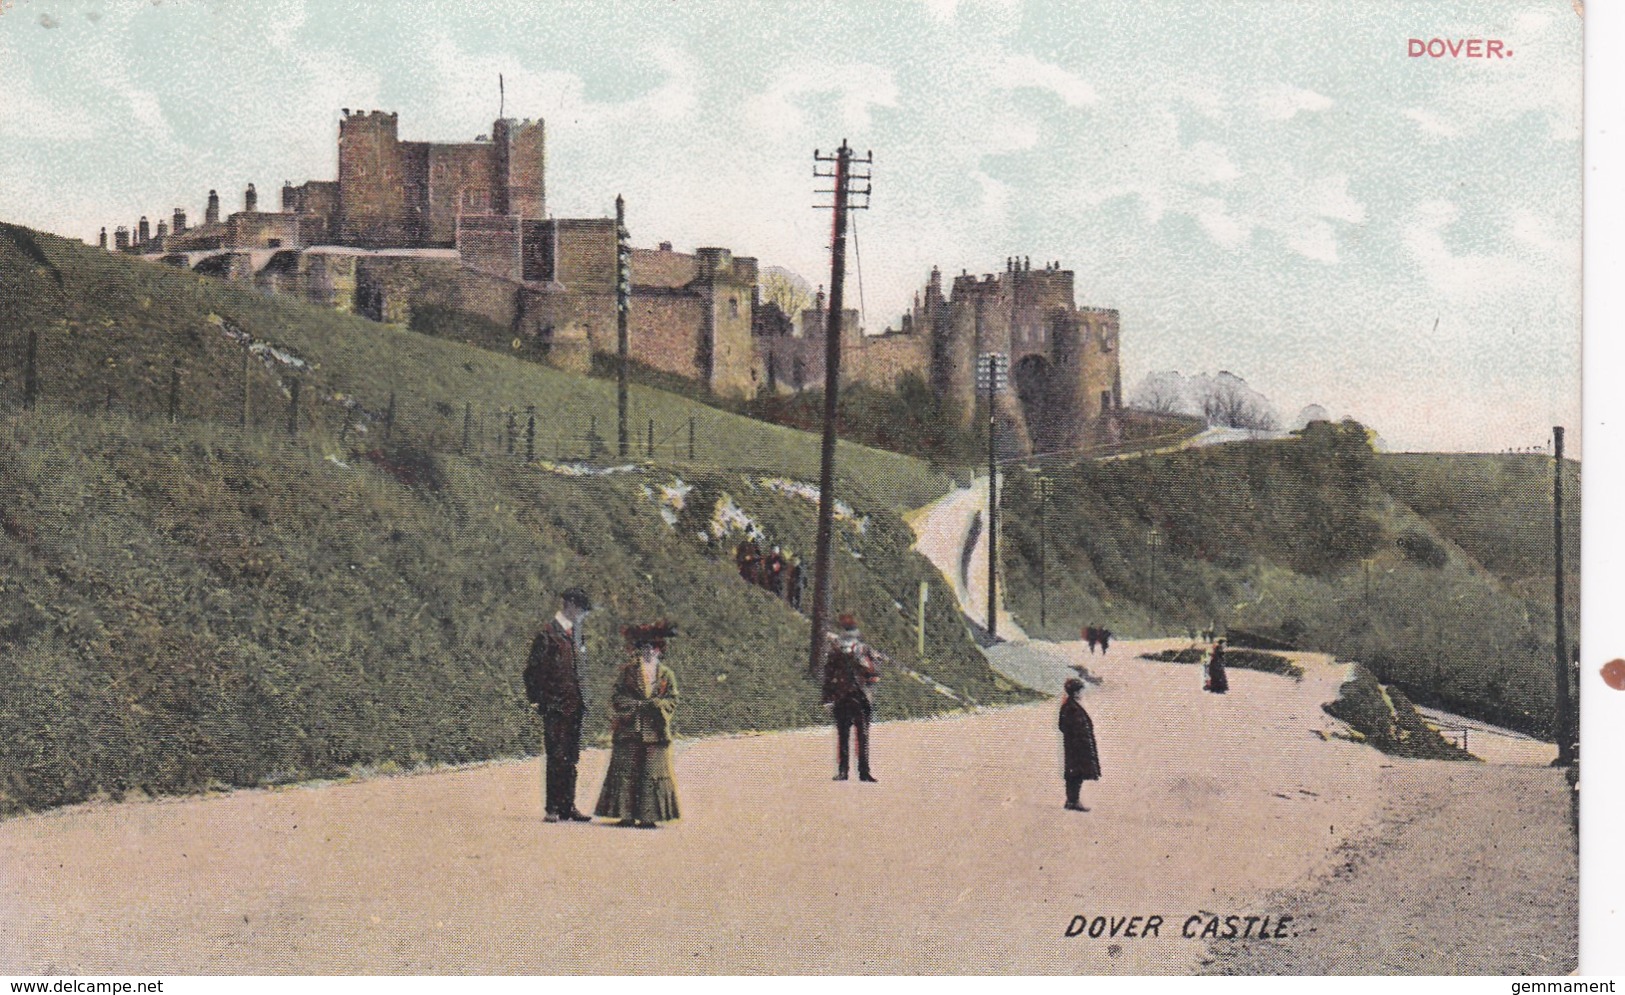 DOVER CASTLE - Dover